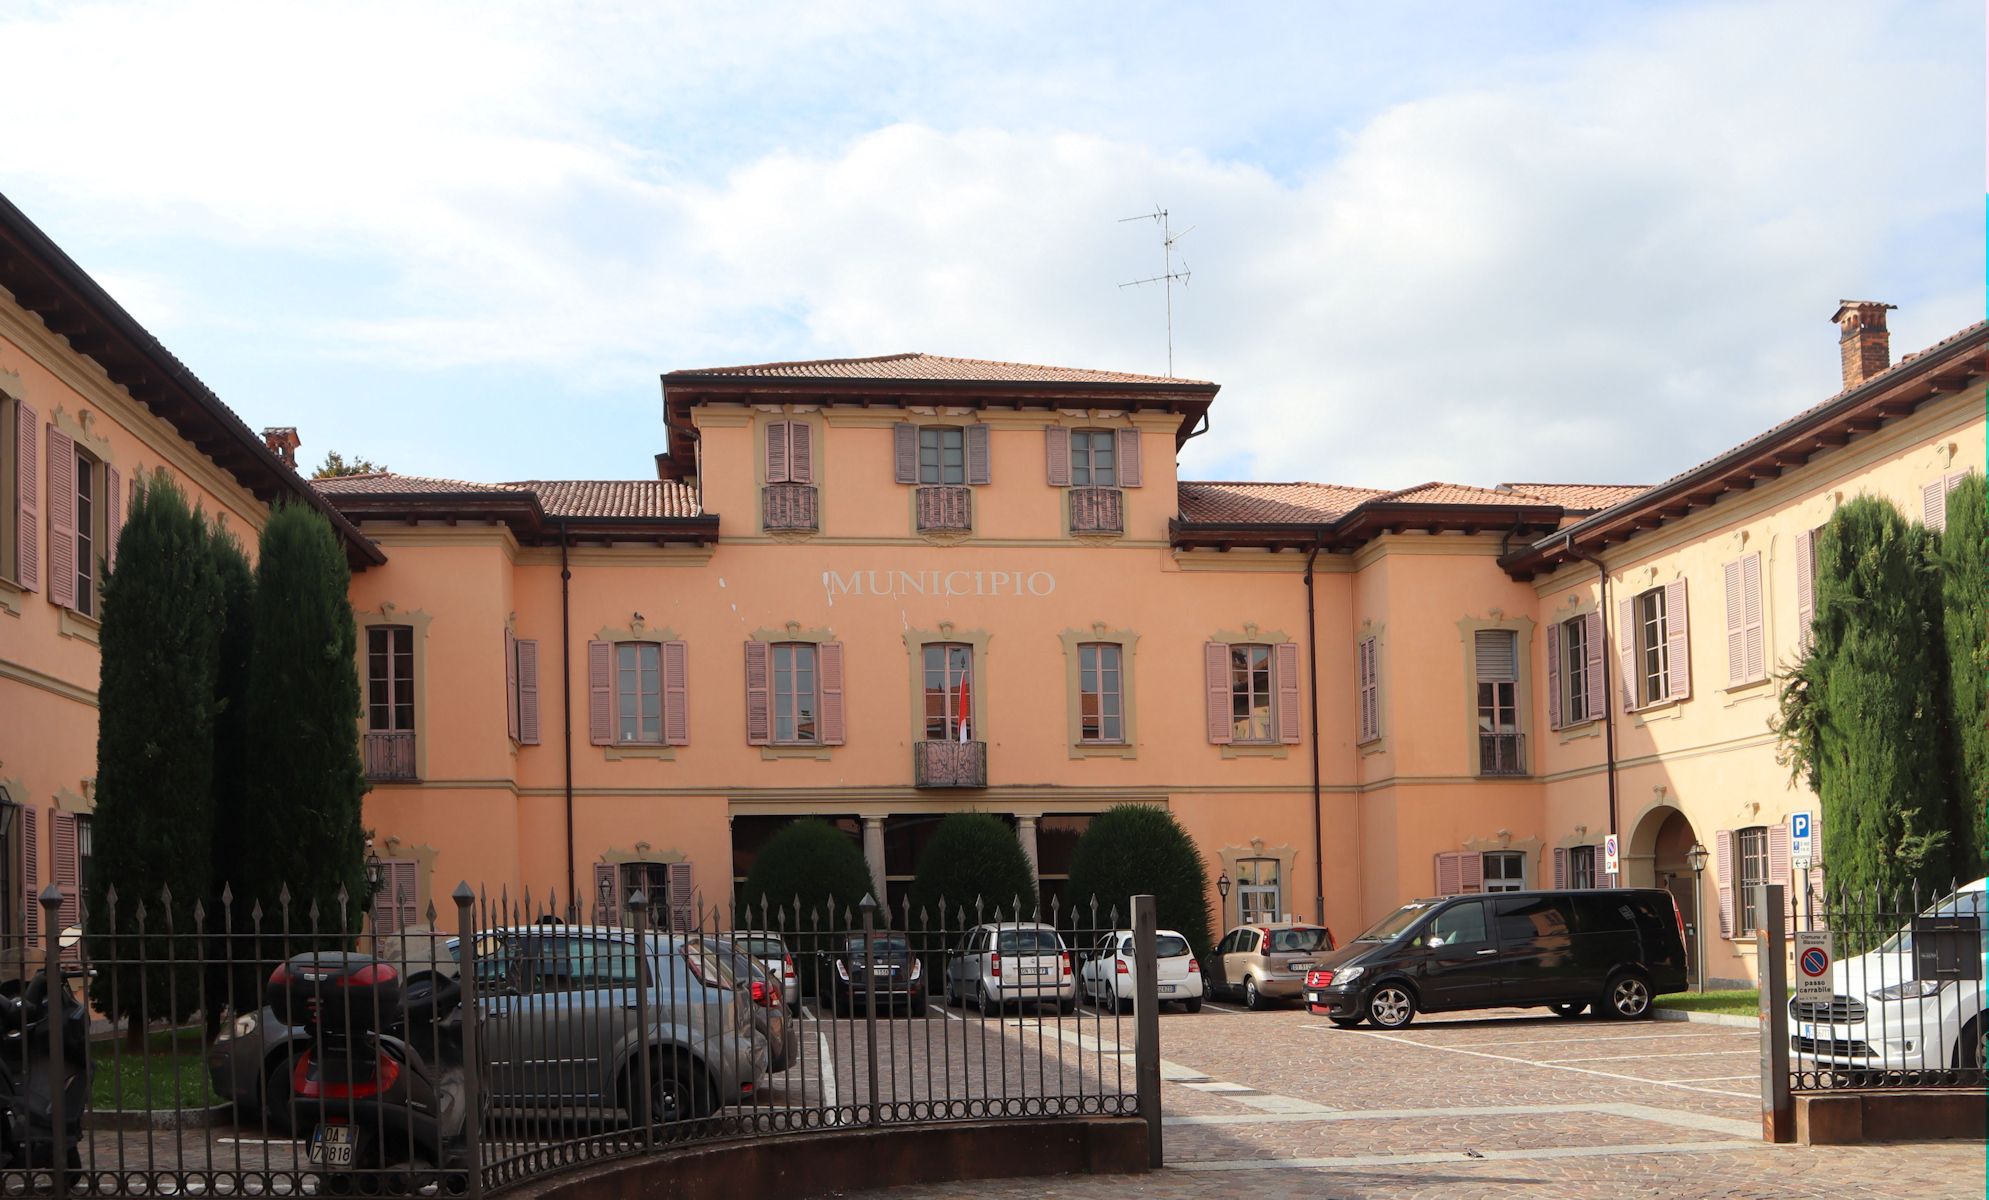 Villa Verri, heute das Rathaus, an der Stelle der ehemaligen Burg in Biassono